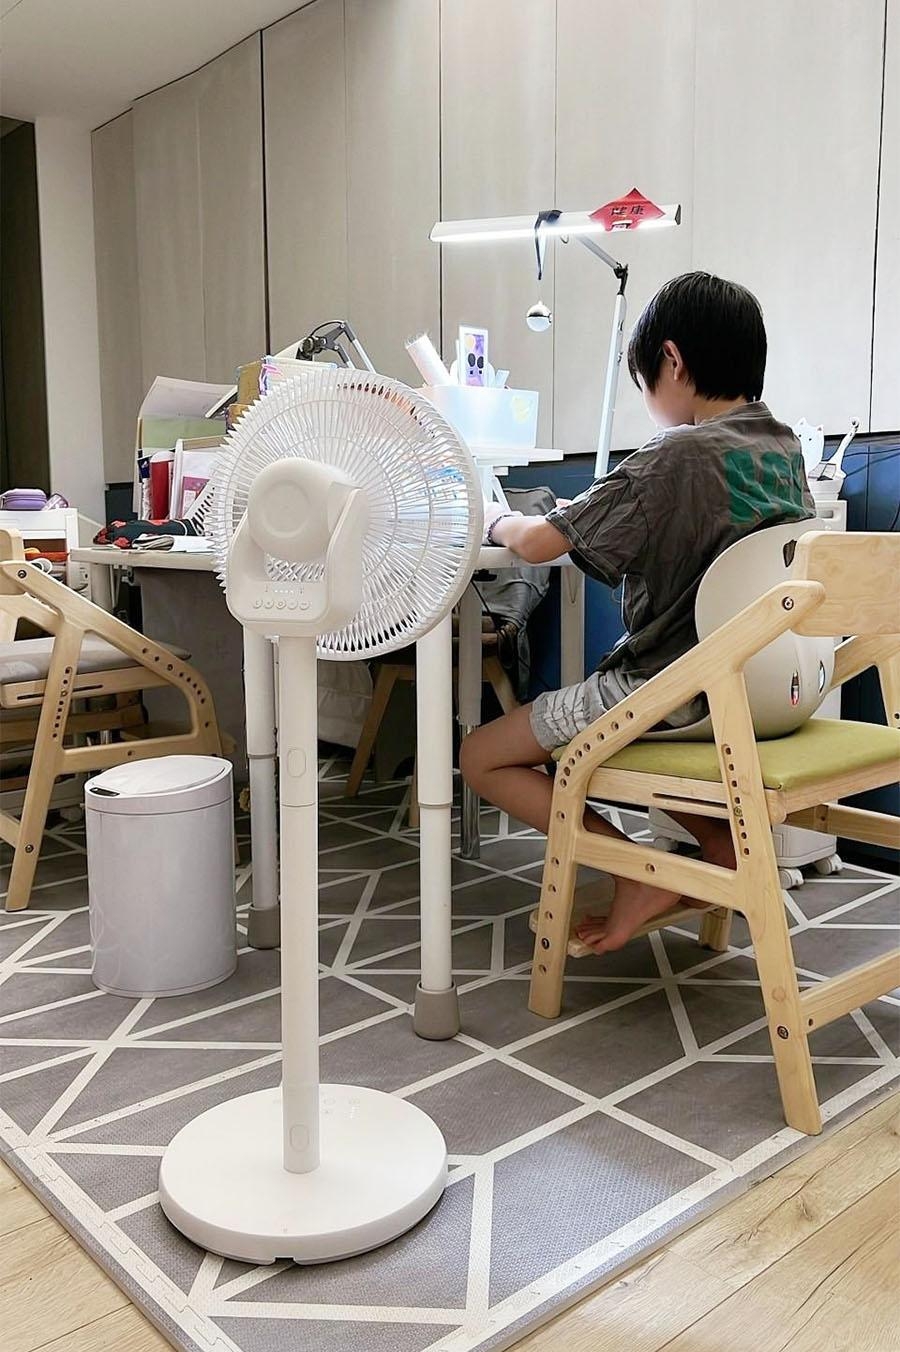 [啾團]日本KOIZUMI森林浴負離子無線電風扇,會釋放1億負離子,停電也不怕!超適合露營的無線電風扇